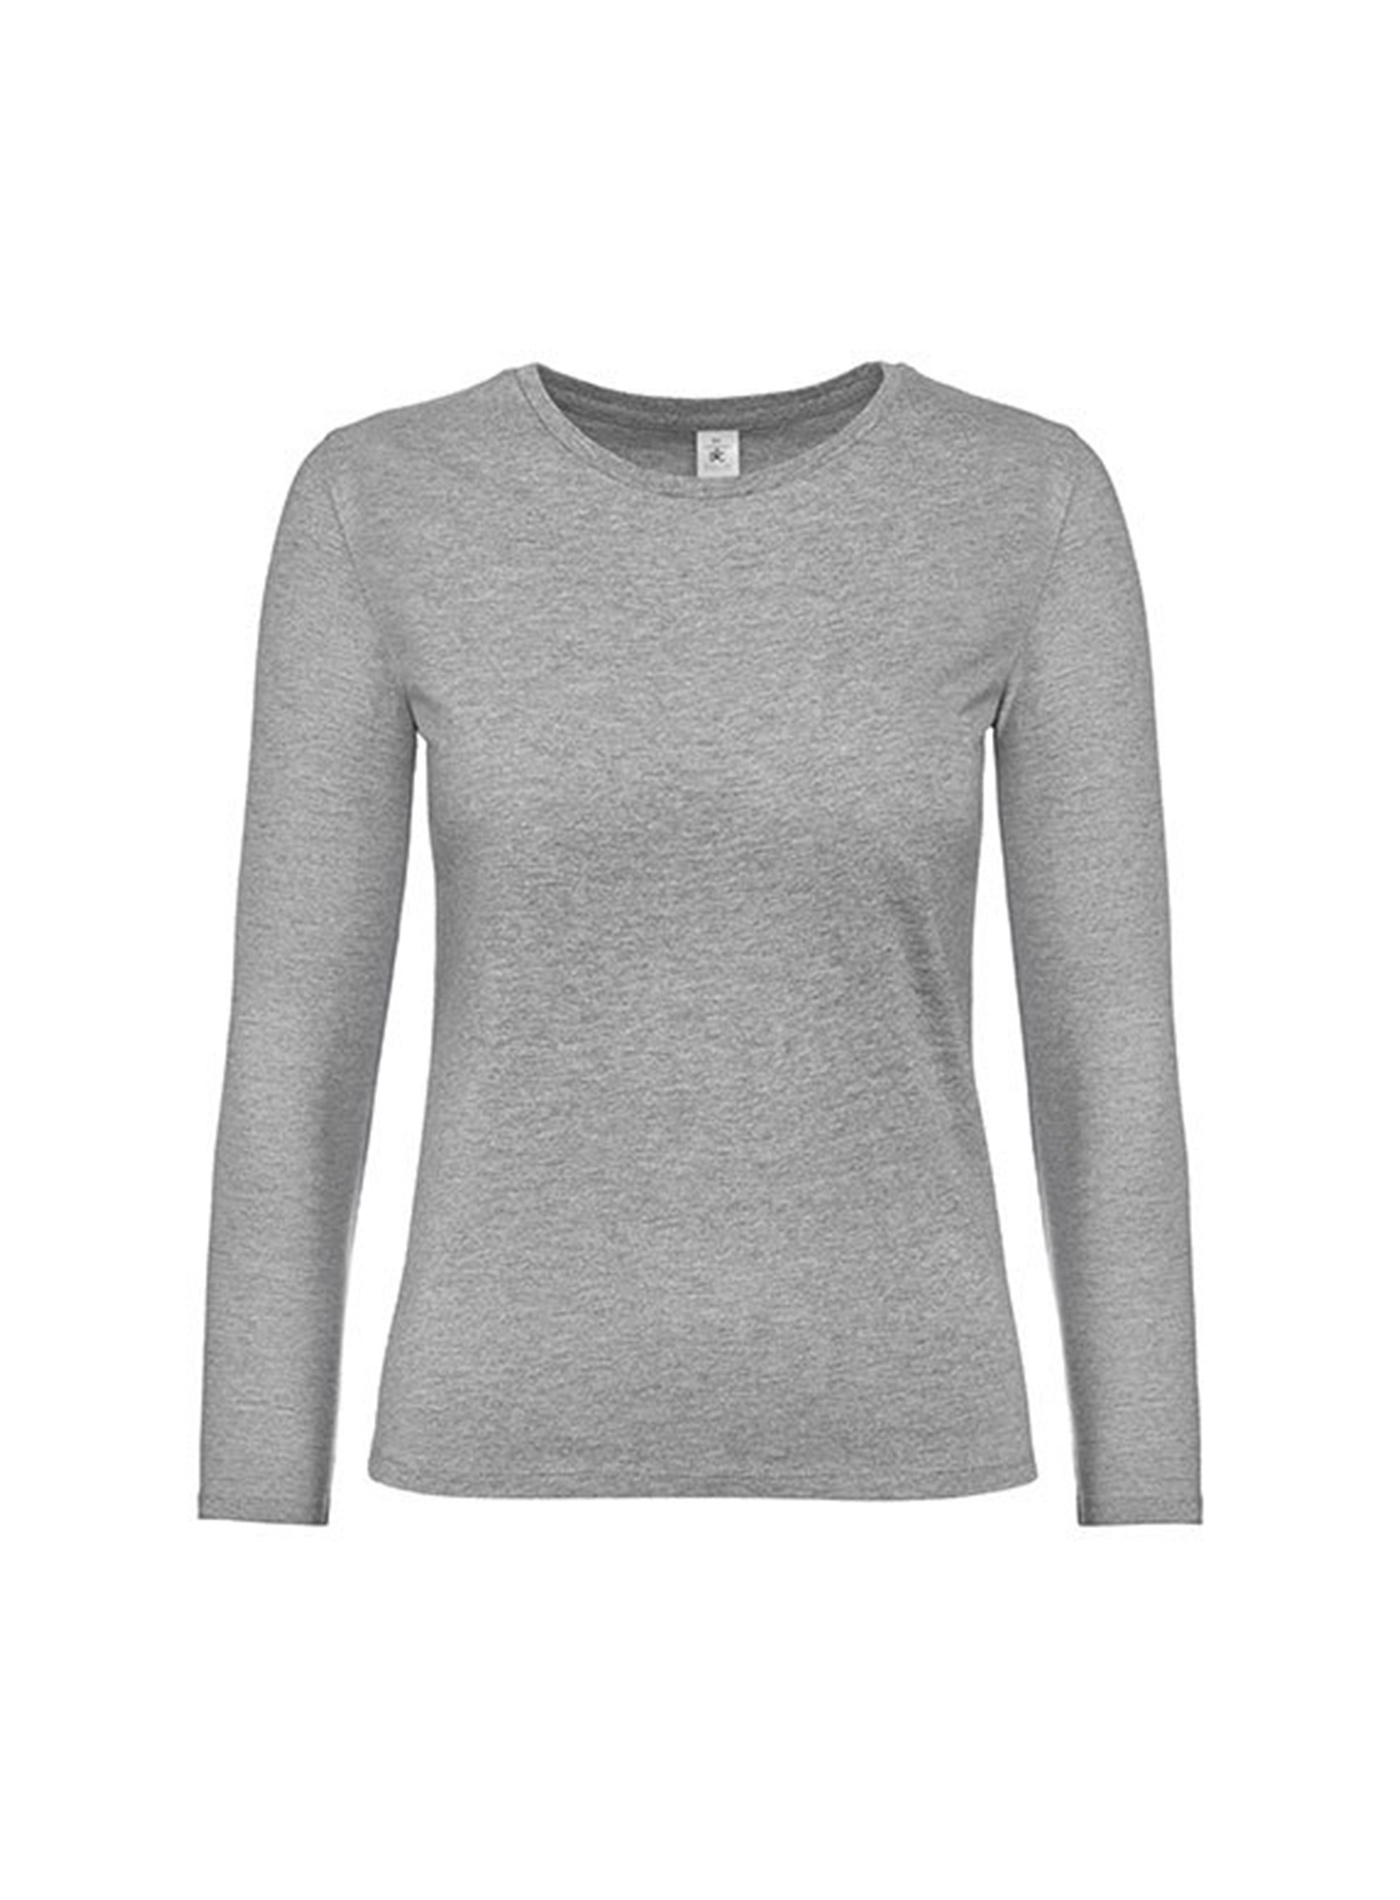 Dámské tričko s dlouhým rukávem B&C Collection - Světle šedý melír S